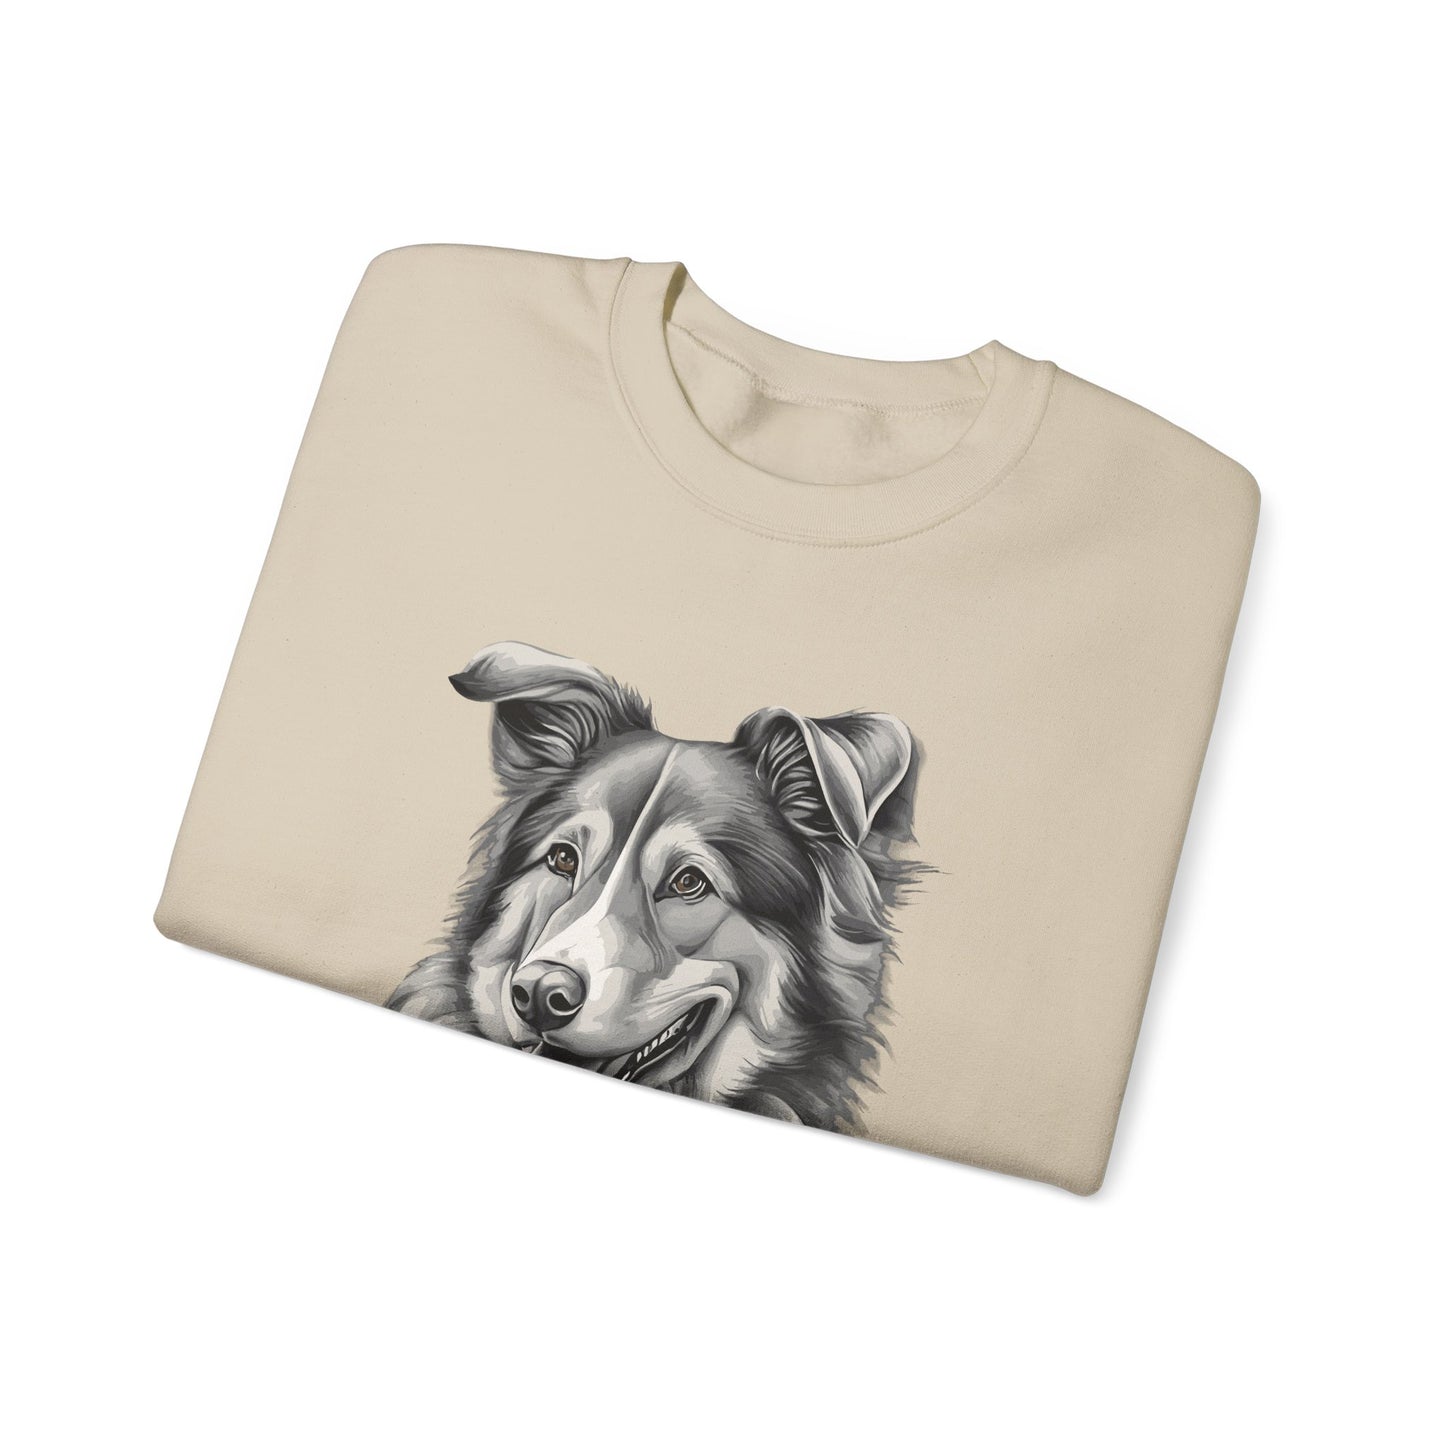 Collie, Dog, Dog Lover, Unisex Heavy Blend™ Crewneck Sweatshirt